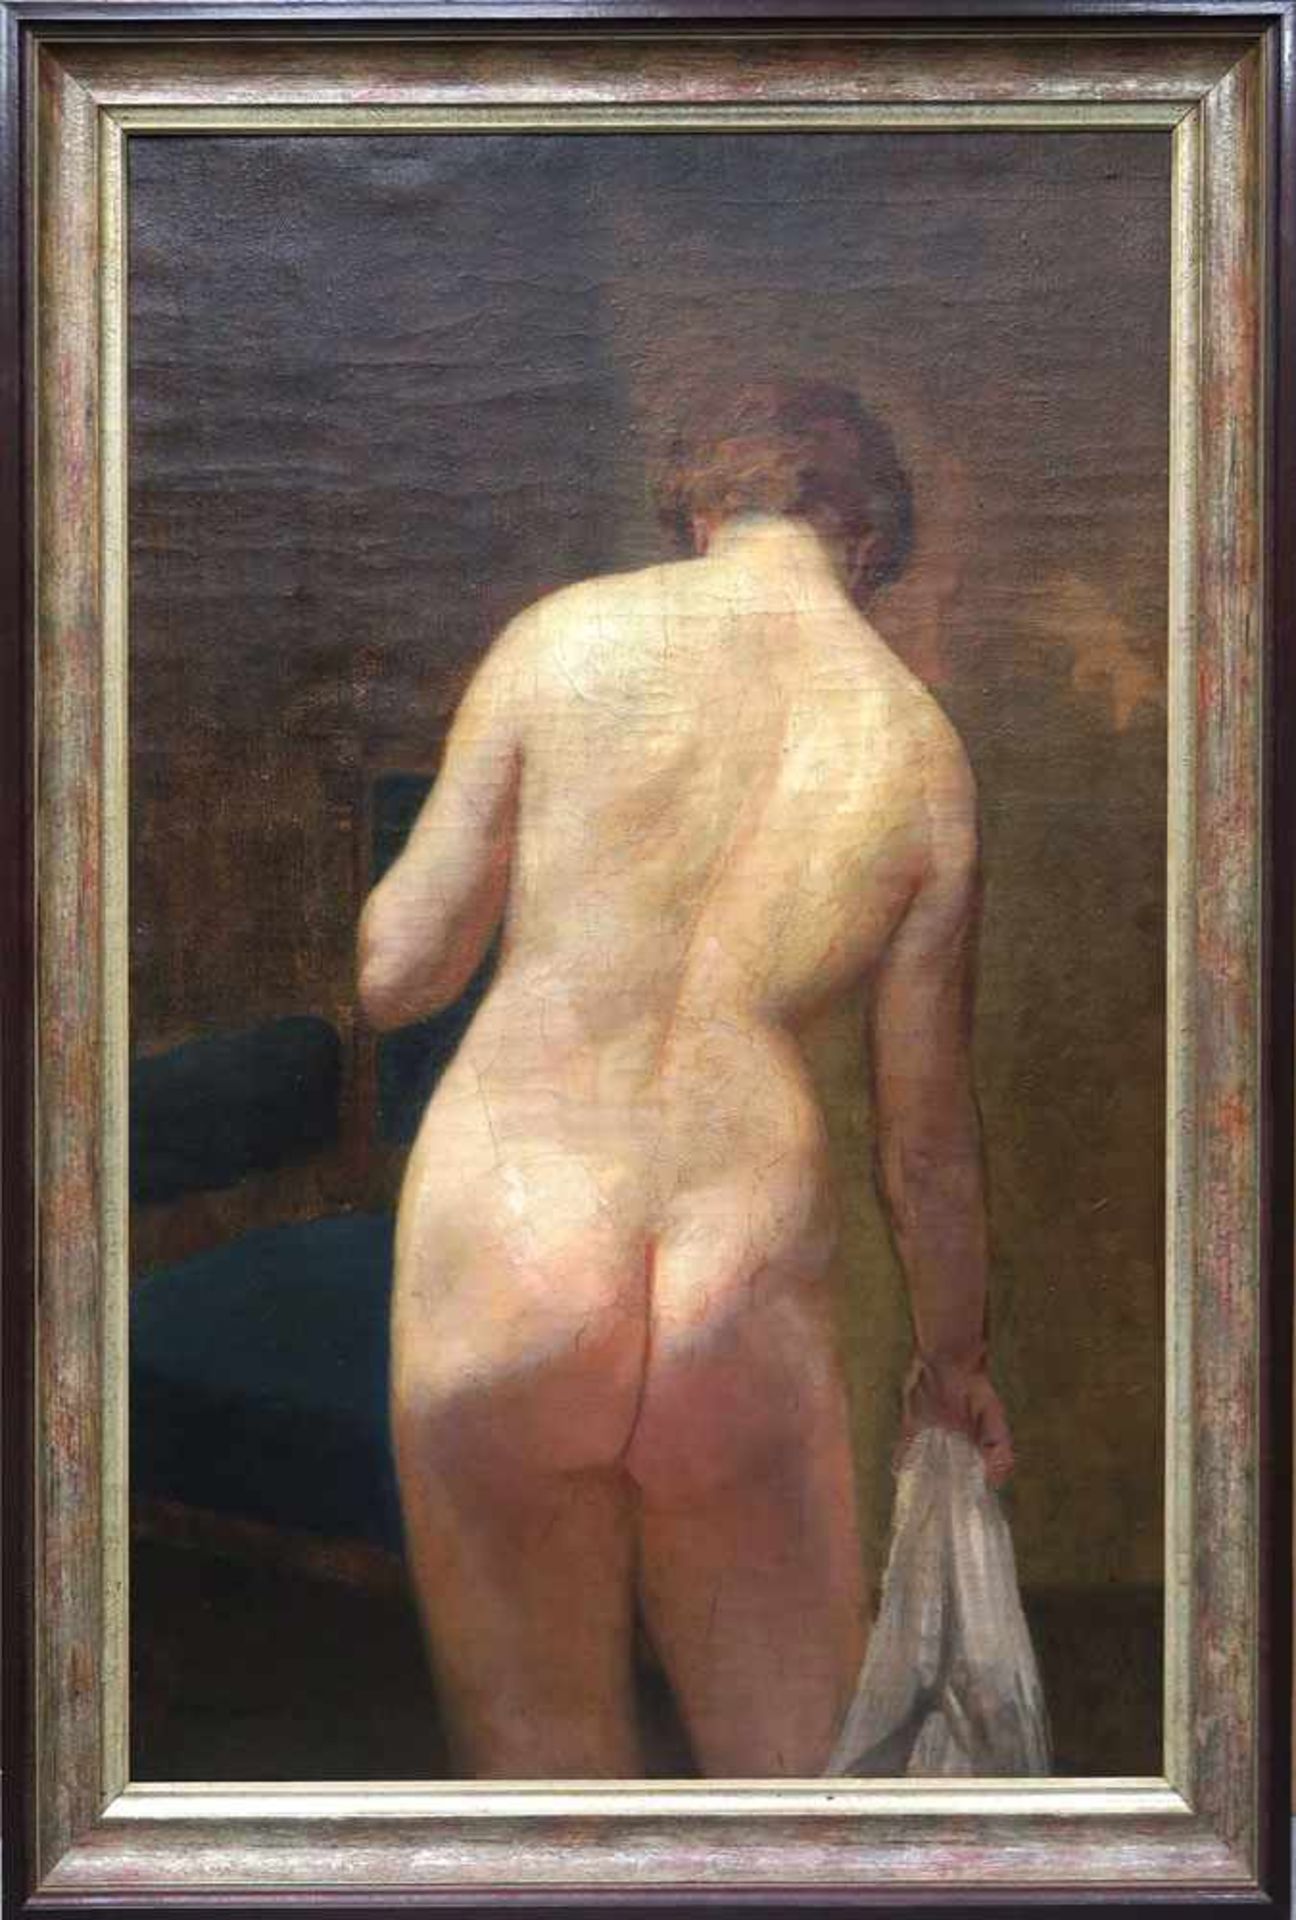 Braunthal, Eduard Otto von 1873 - 1939 Weiblicher Rückenakt Öl/Lwd. 119 x 79 cm. L. u. signiert. - Bild 2 aus 2